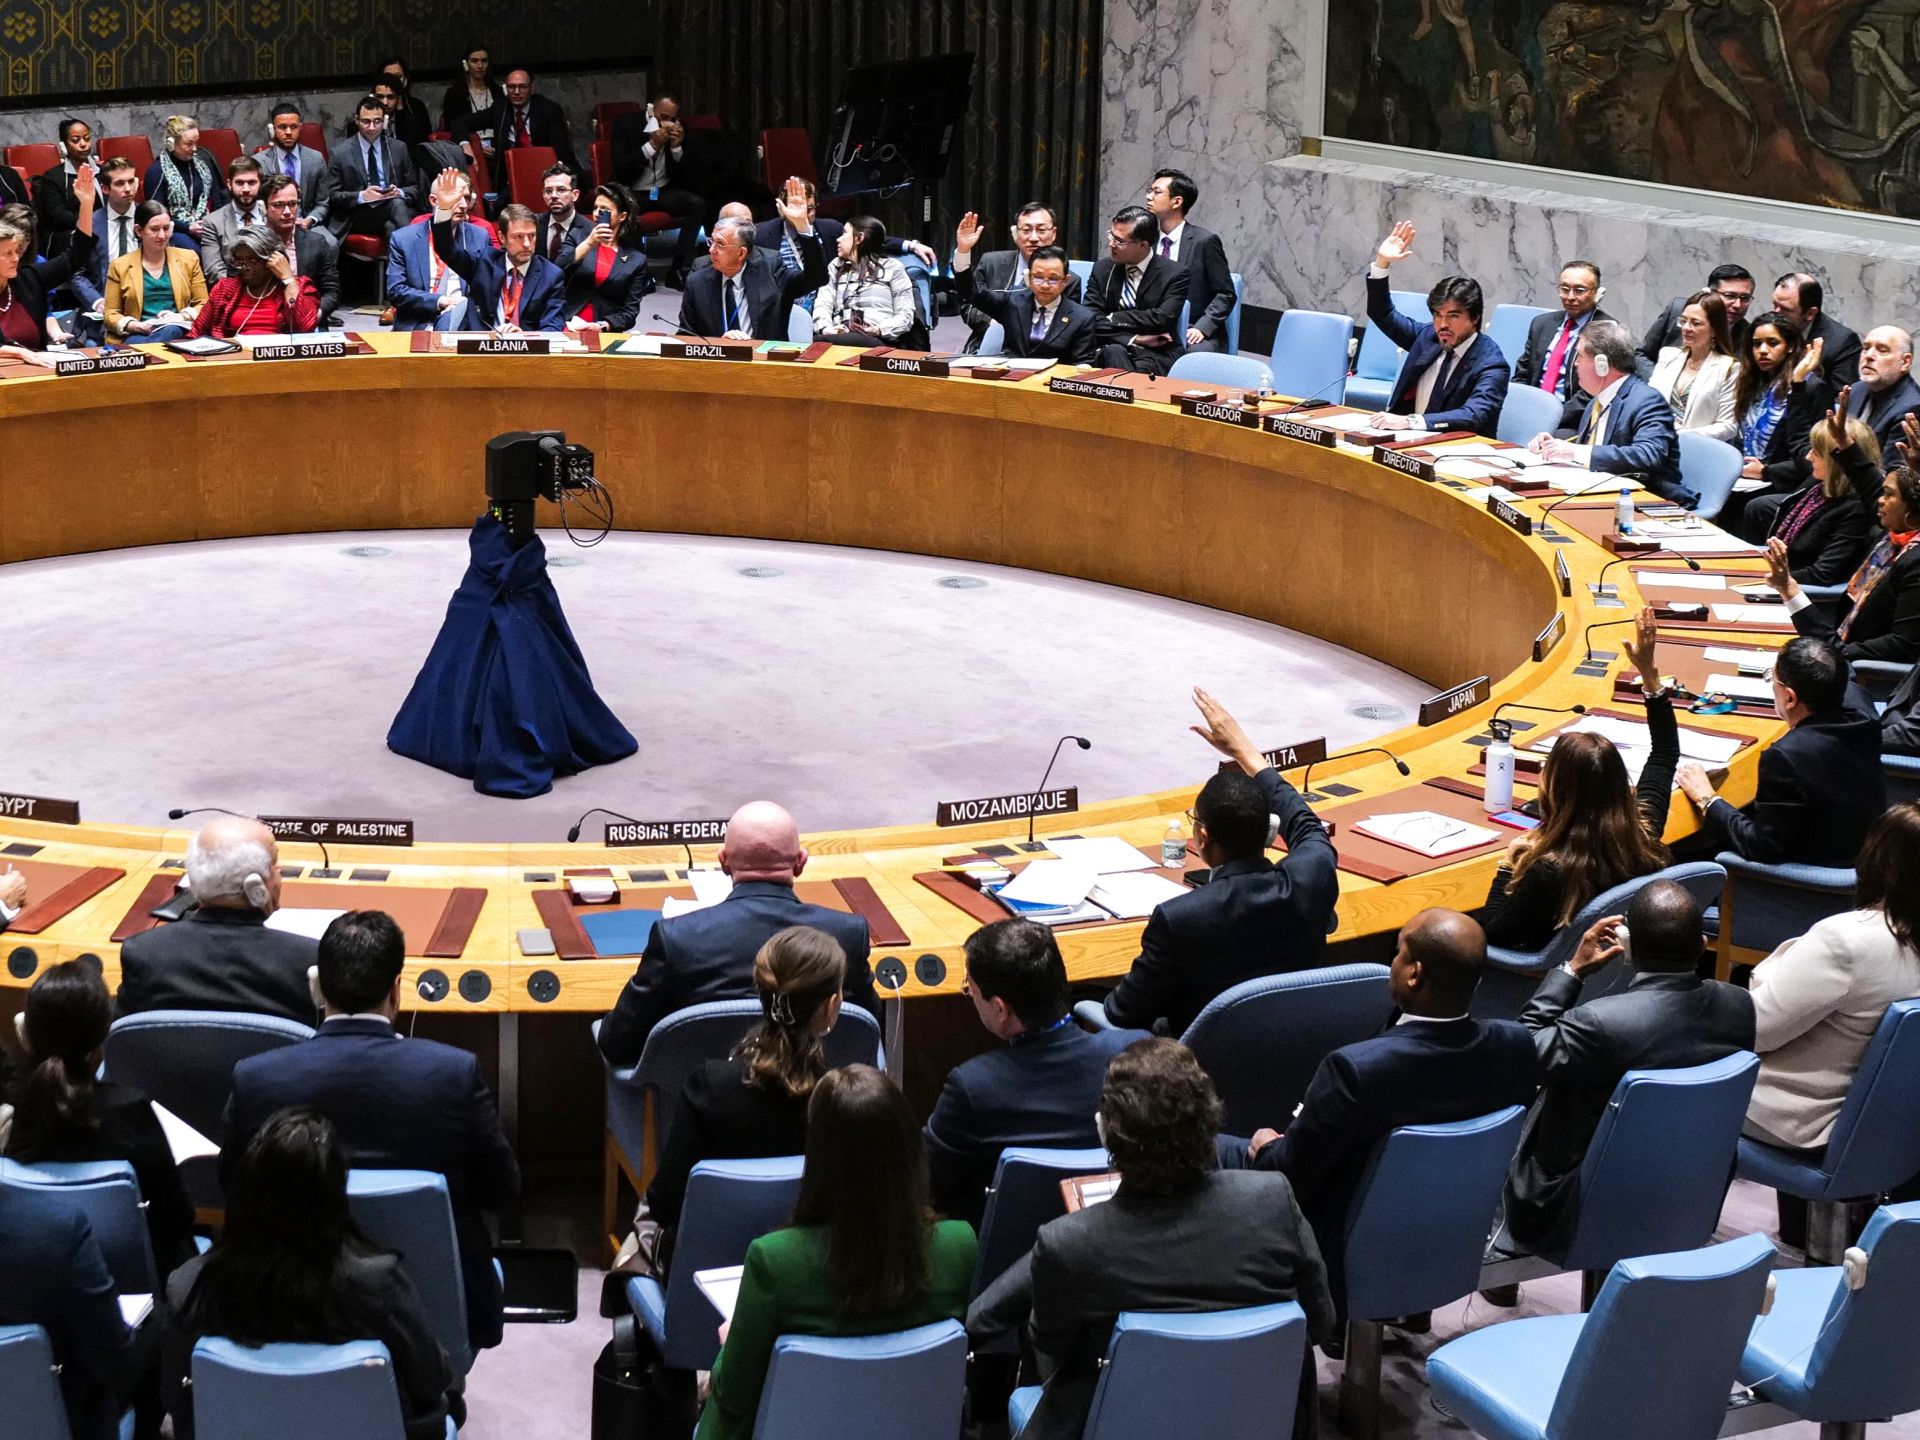 مجلس الأمن يعتمد قرارا بشأن البحر الأحمر وروسيا تعتبره “مسيسا” | أخبار – البوكس نيوز